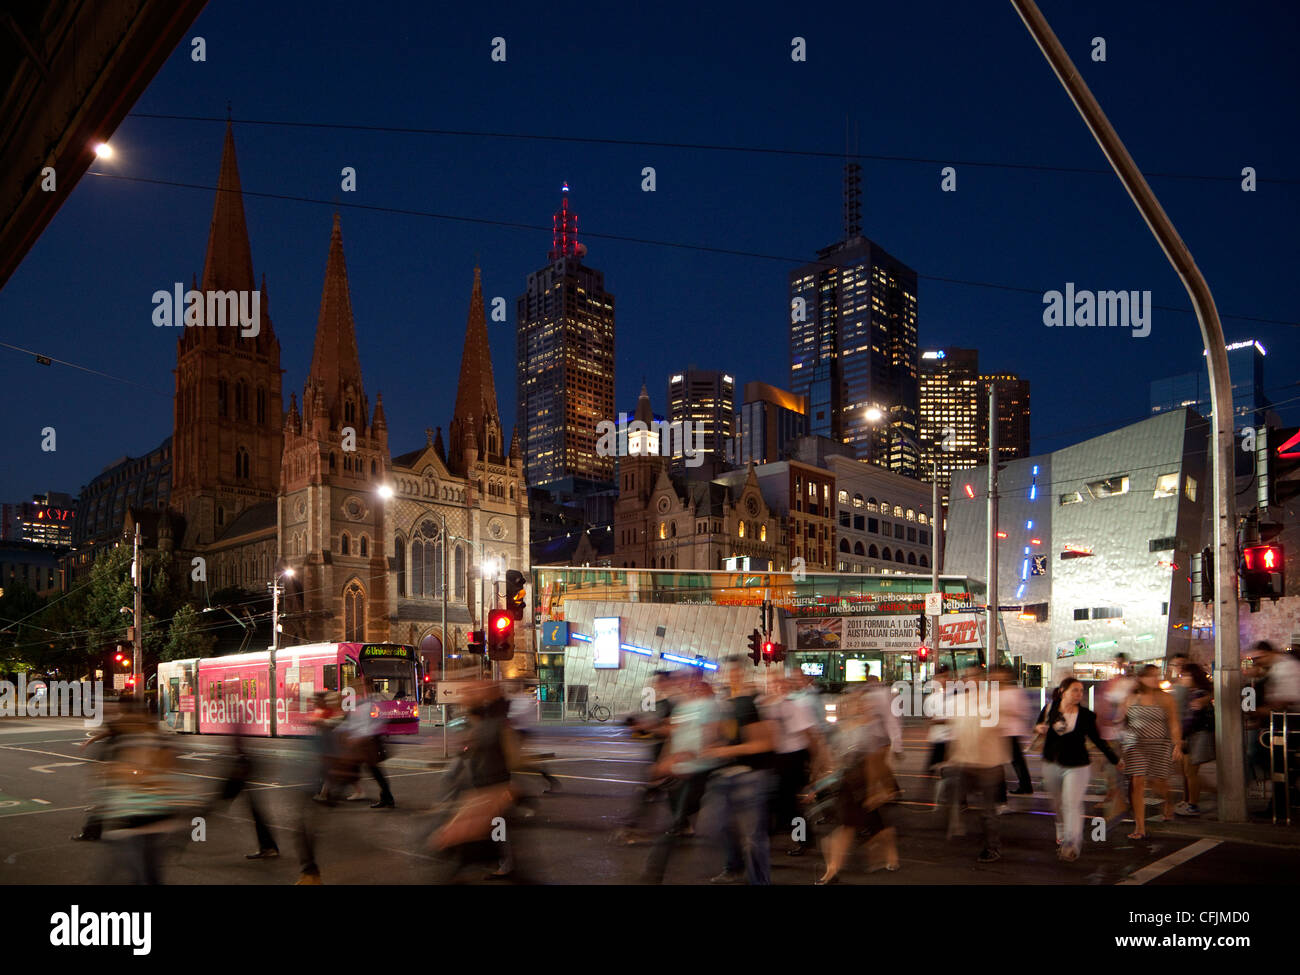 La Catedral de San Pablo y la Plaza de la Federación en la noche, Melbourne, Victoria, Australia, el Pacífico Foto de stock